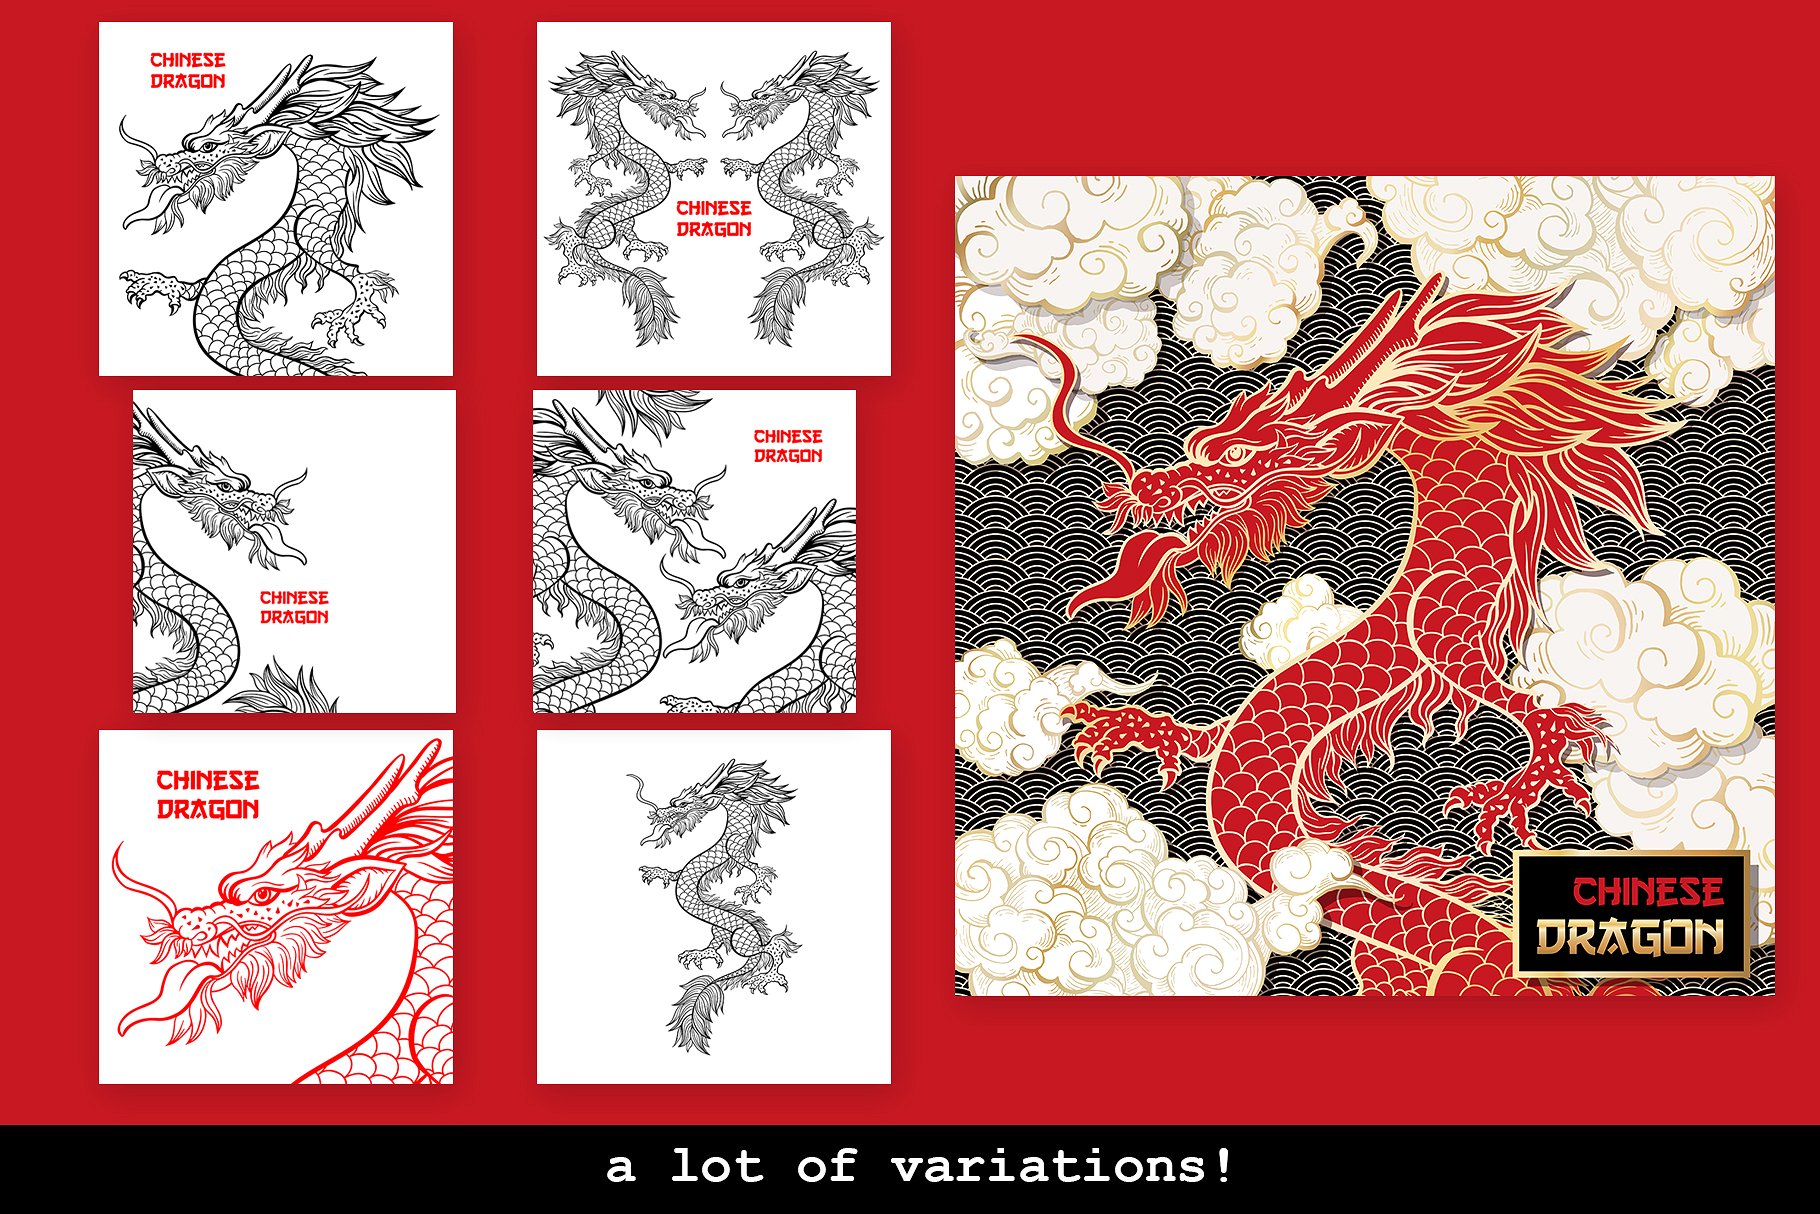 手绘中国风格中国龙AI矢量插图 Hand Drawn Chinese Style Chinese Dragon Illustrator Vector illustration插图5